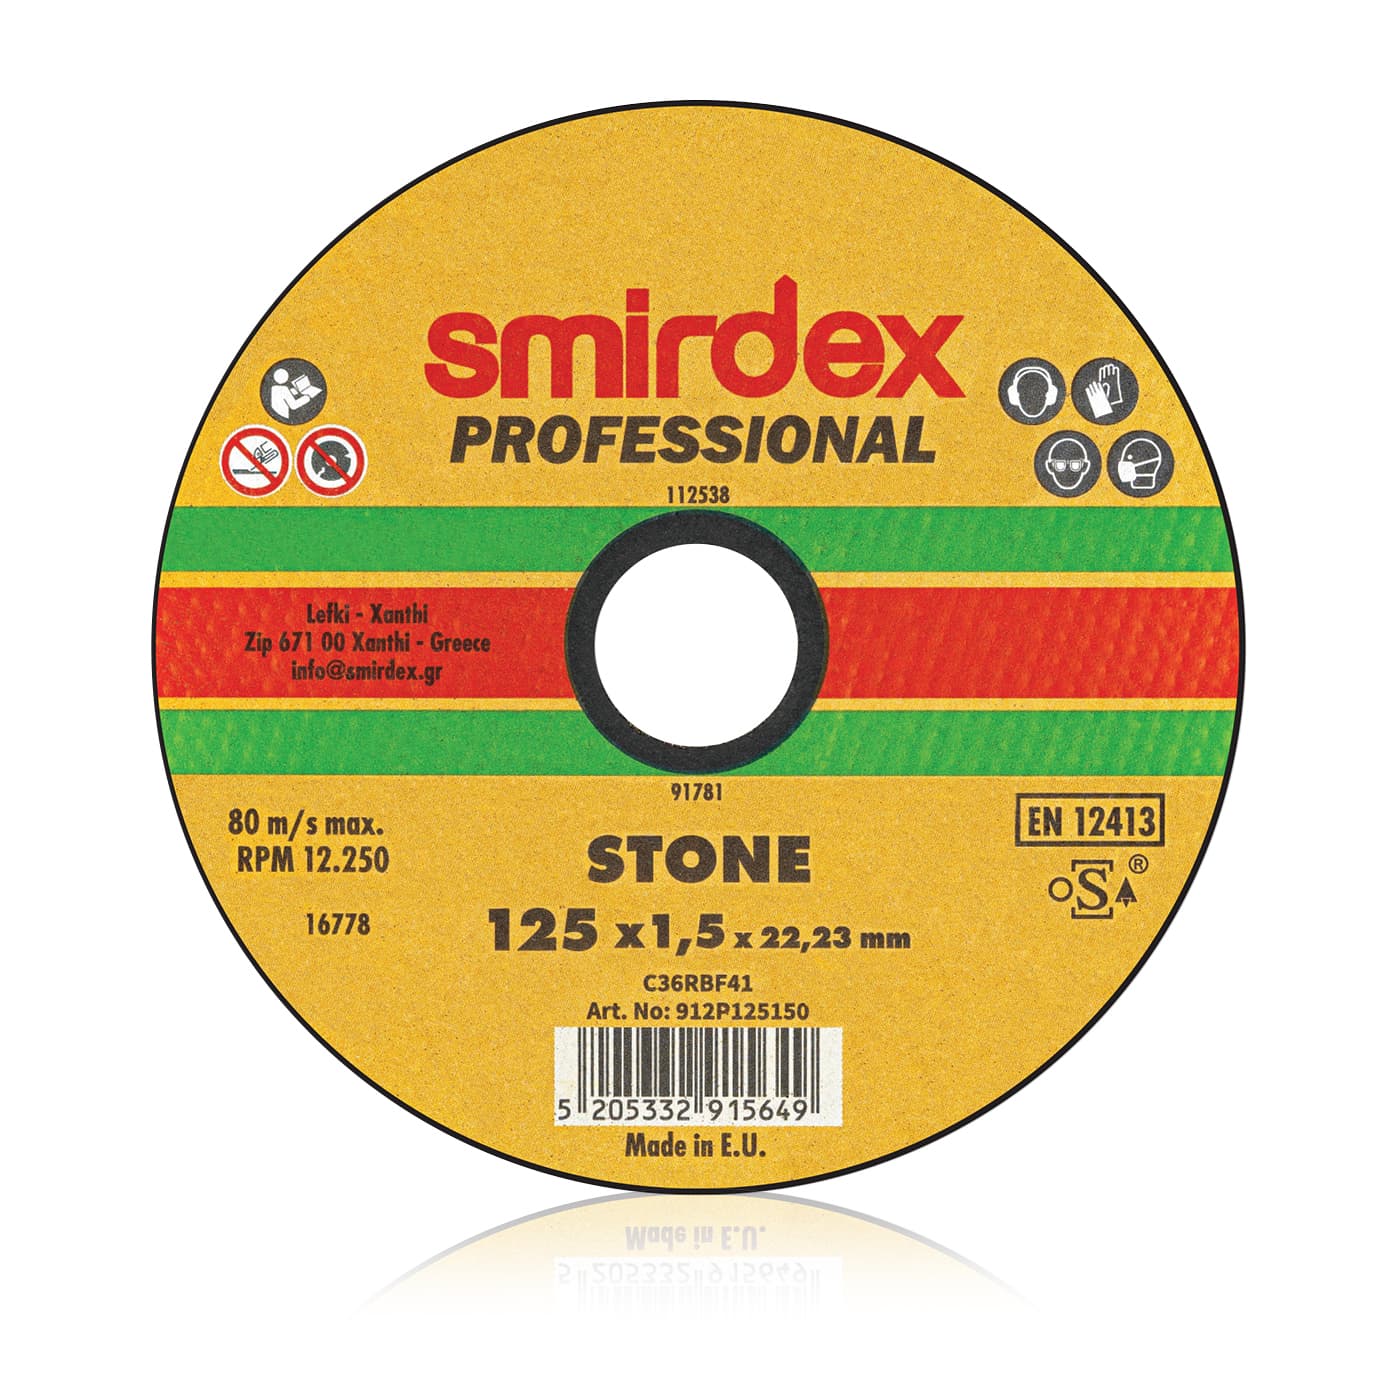 Smirdex professional marble cutting wheel 230x1.9x22.23